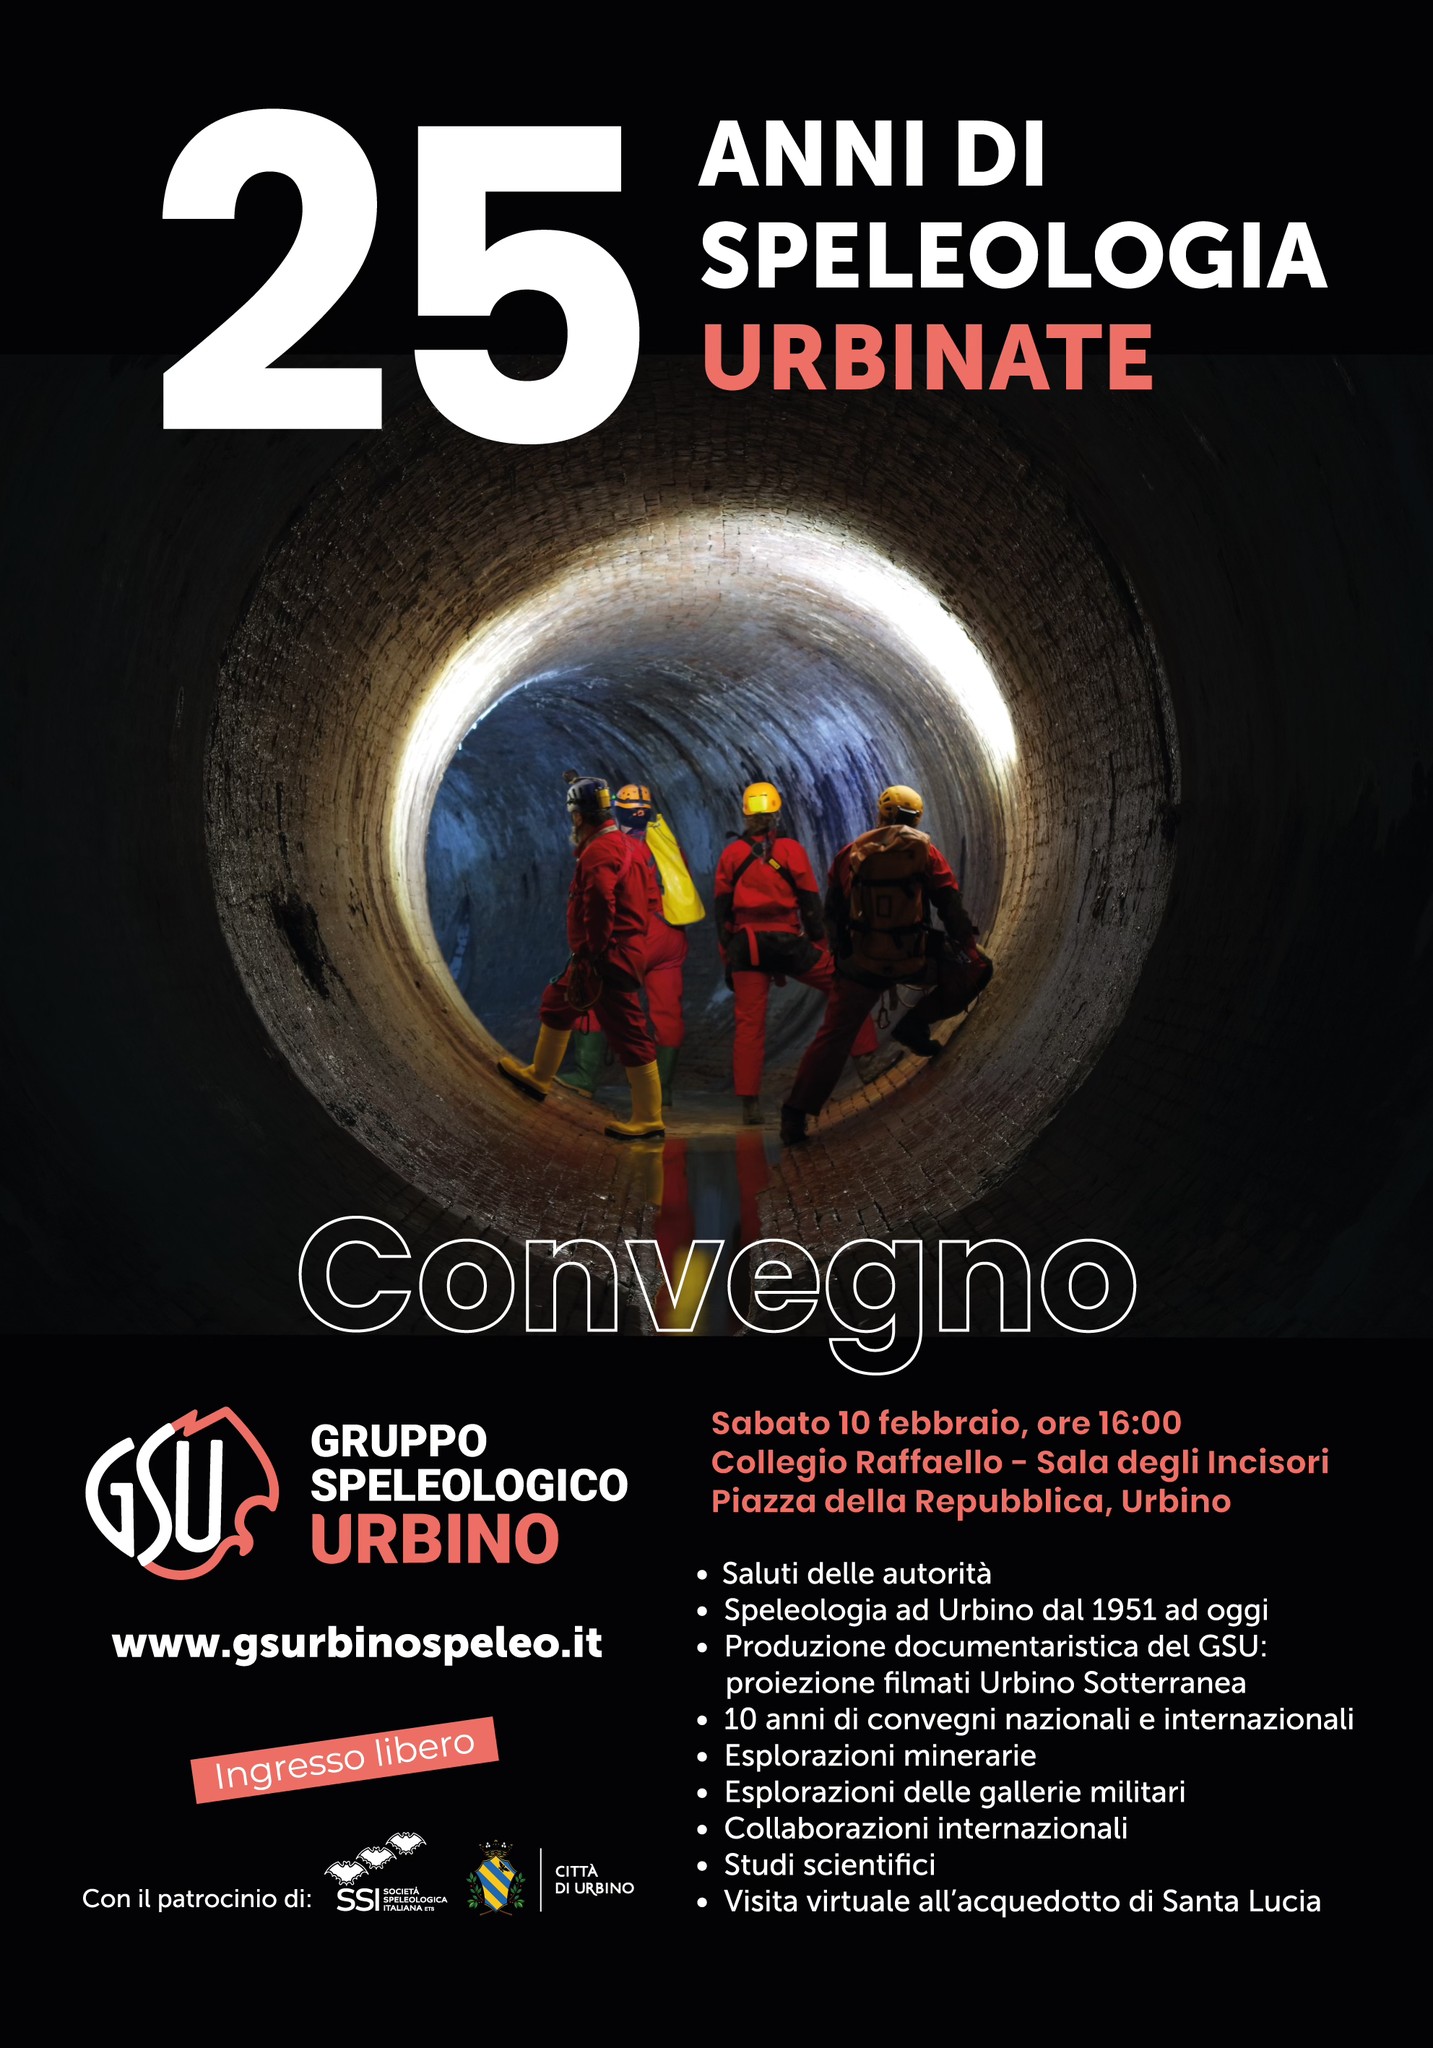 Gruppo Speleologico Urbino